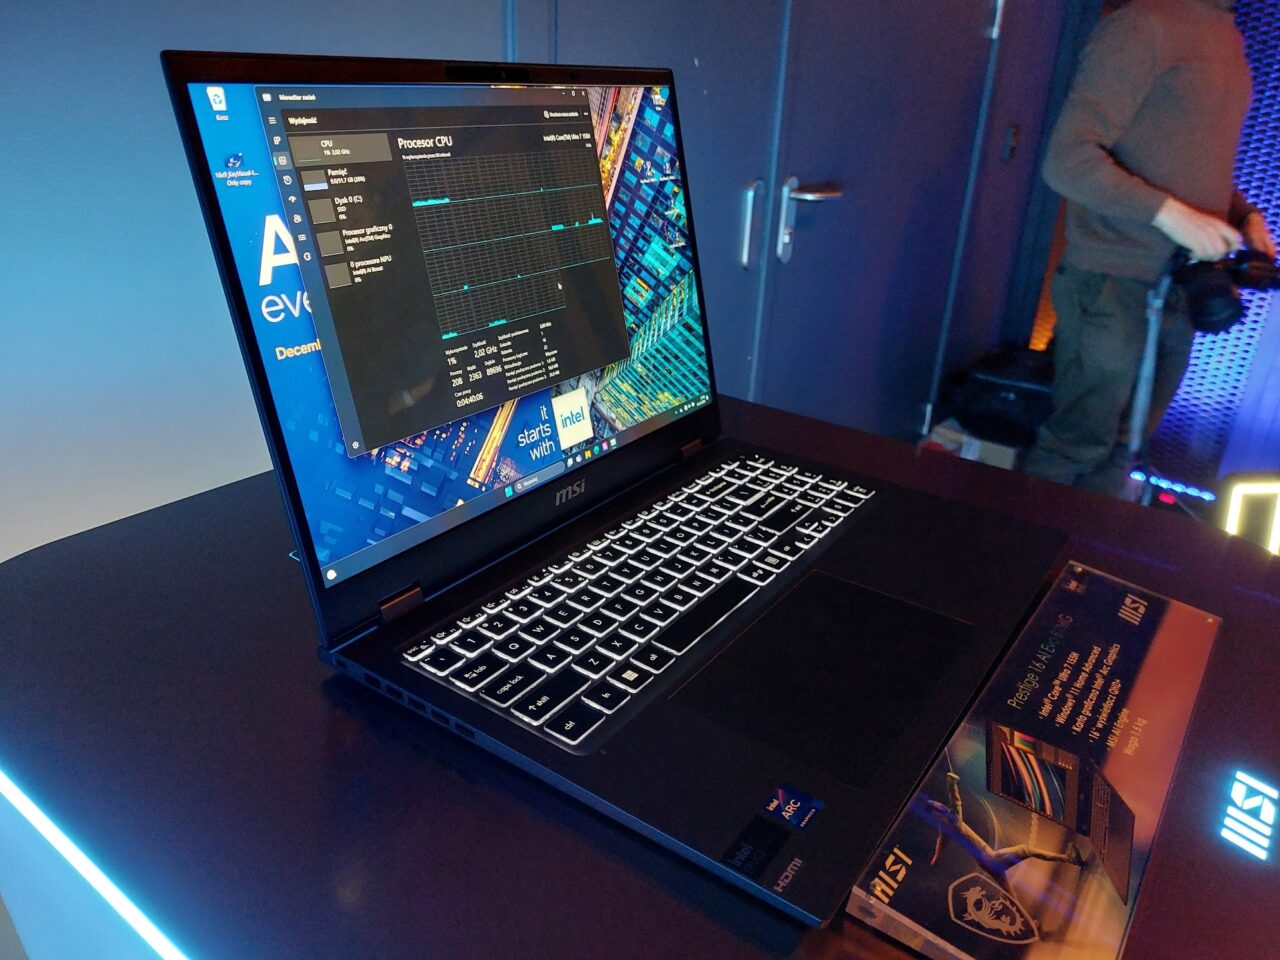 Laptop firmy MSI ustawiony na biurku z włączonym ekranem pokazującym otwarte okno monitora wydajności. W tle częściowo widoczny jest mężczyzna oraz neonowe oświetlenie w pokoju.